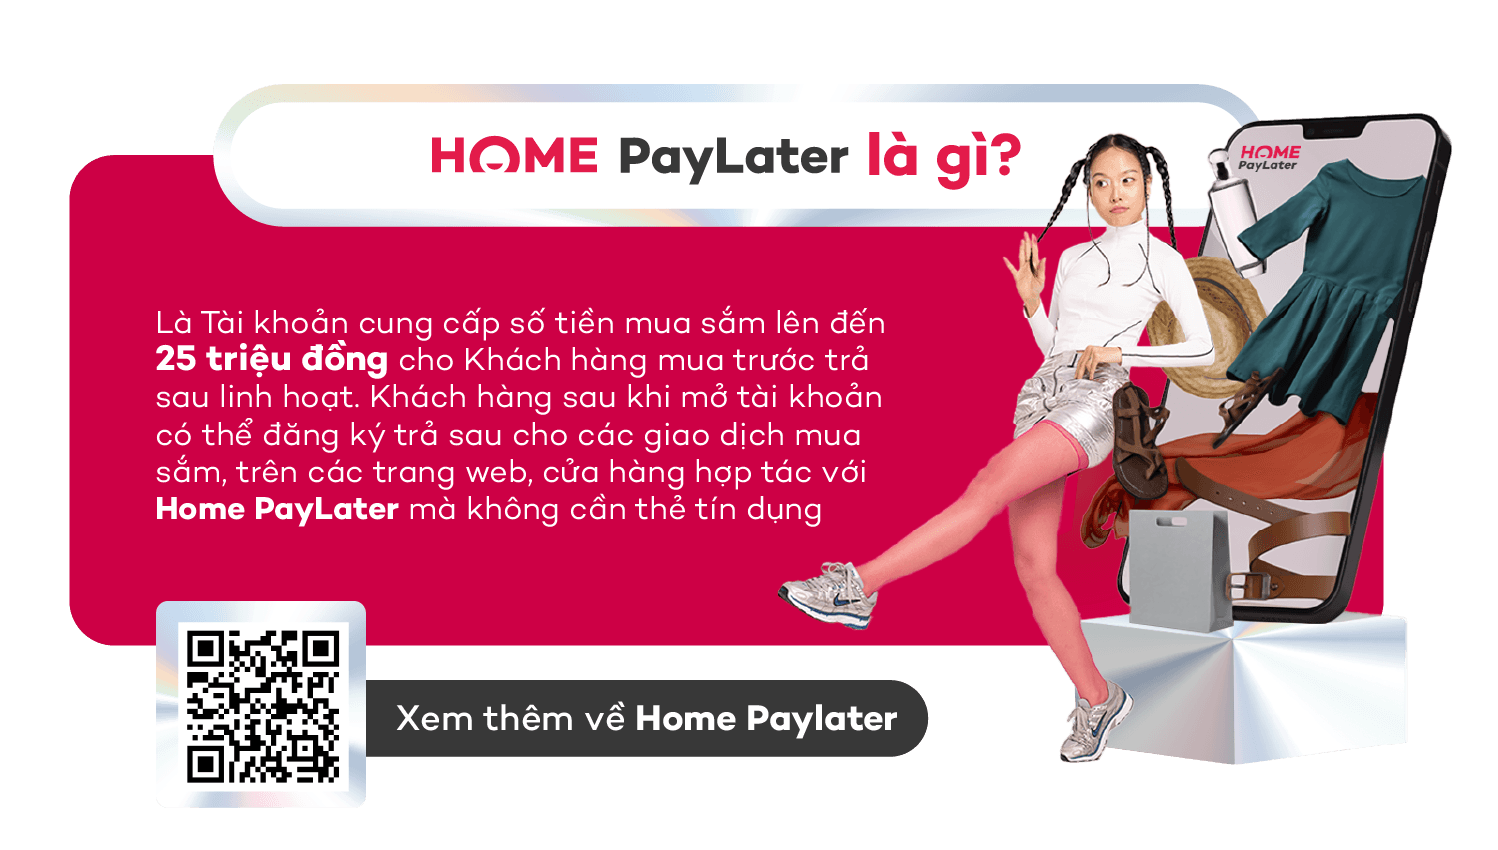 Home PayLater là gì?